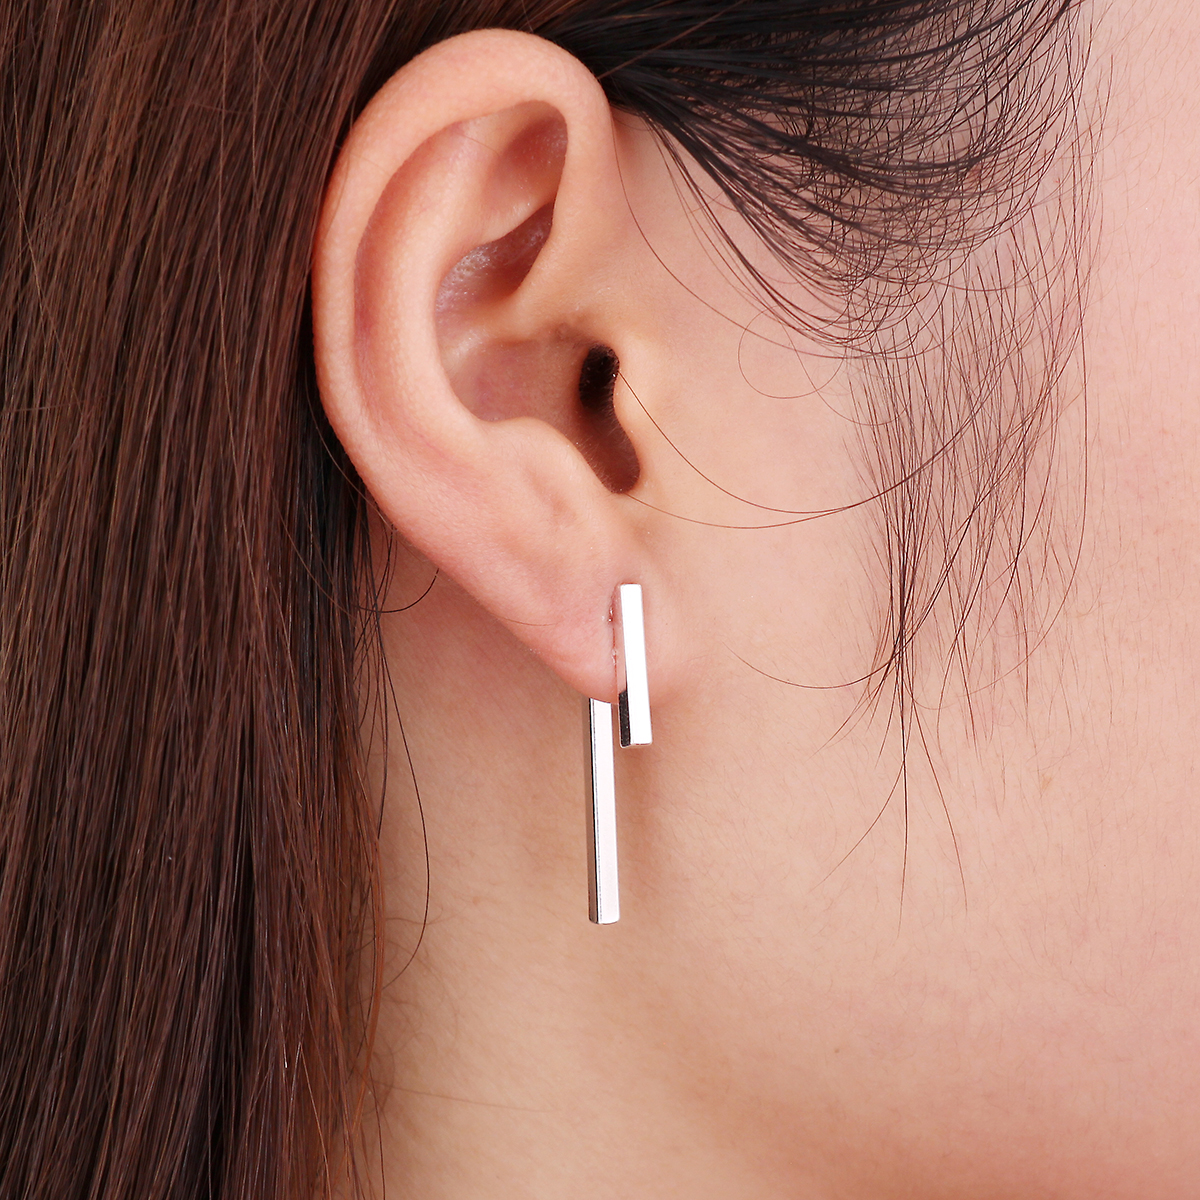 Gold New Punk Earings Simple T Bar Earrings Women Ear Stud Earrings Chic Jewelry Nice